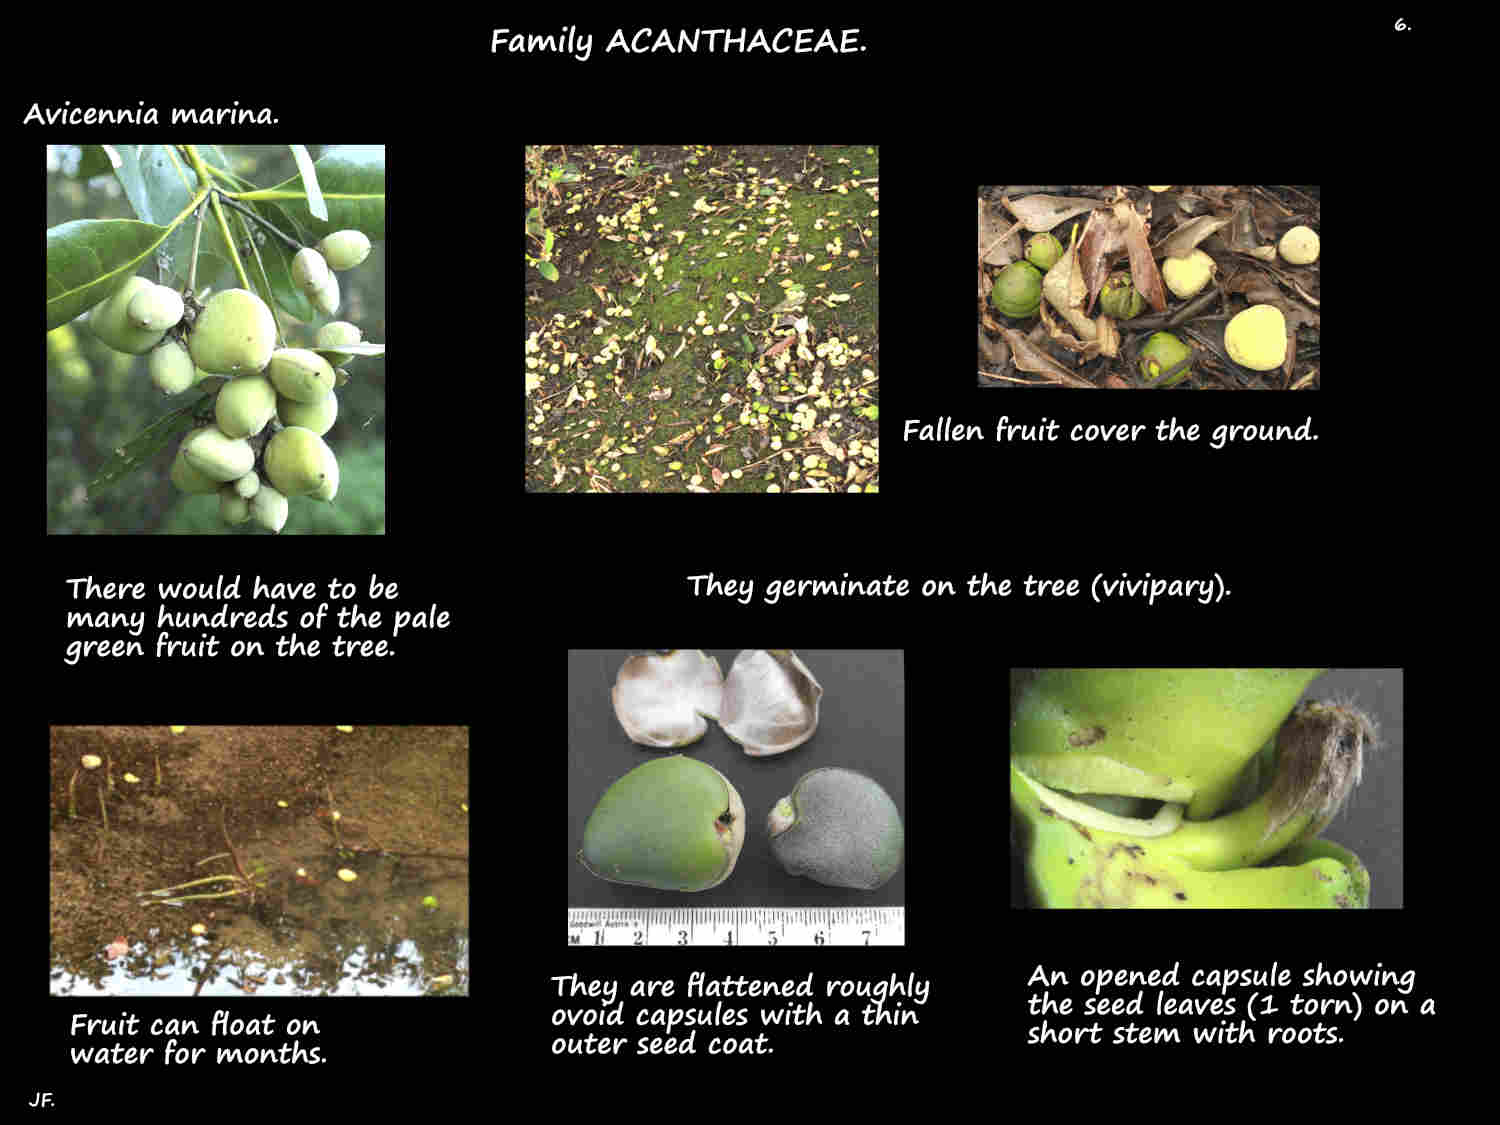 6 Grey mangrove fruit capsules